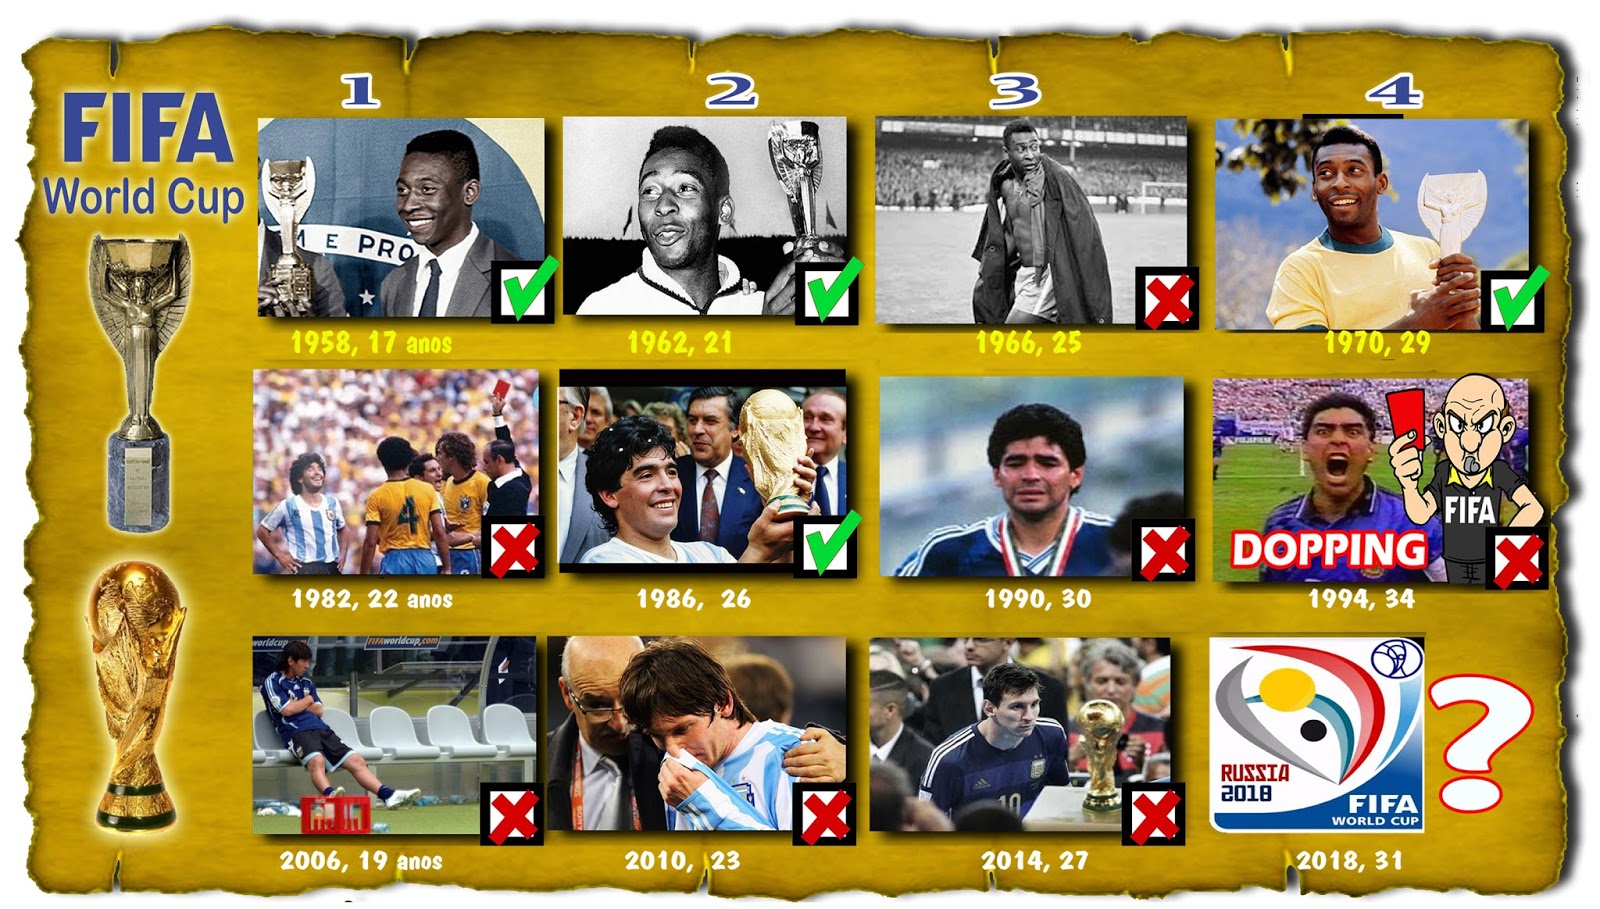 FourFourTwo lista Messi como melhor jogador de todos os tempos; Pelé é só o  4°